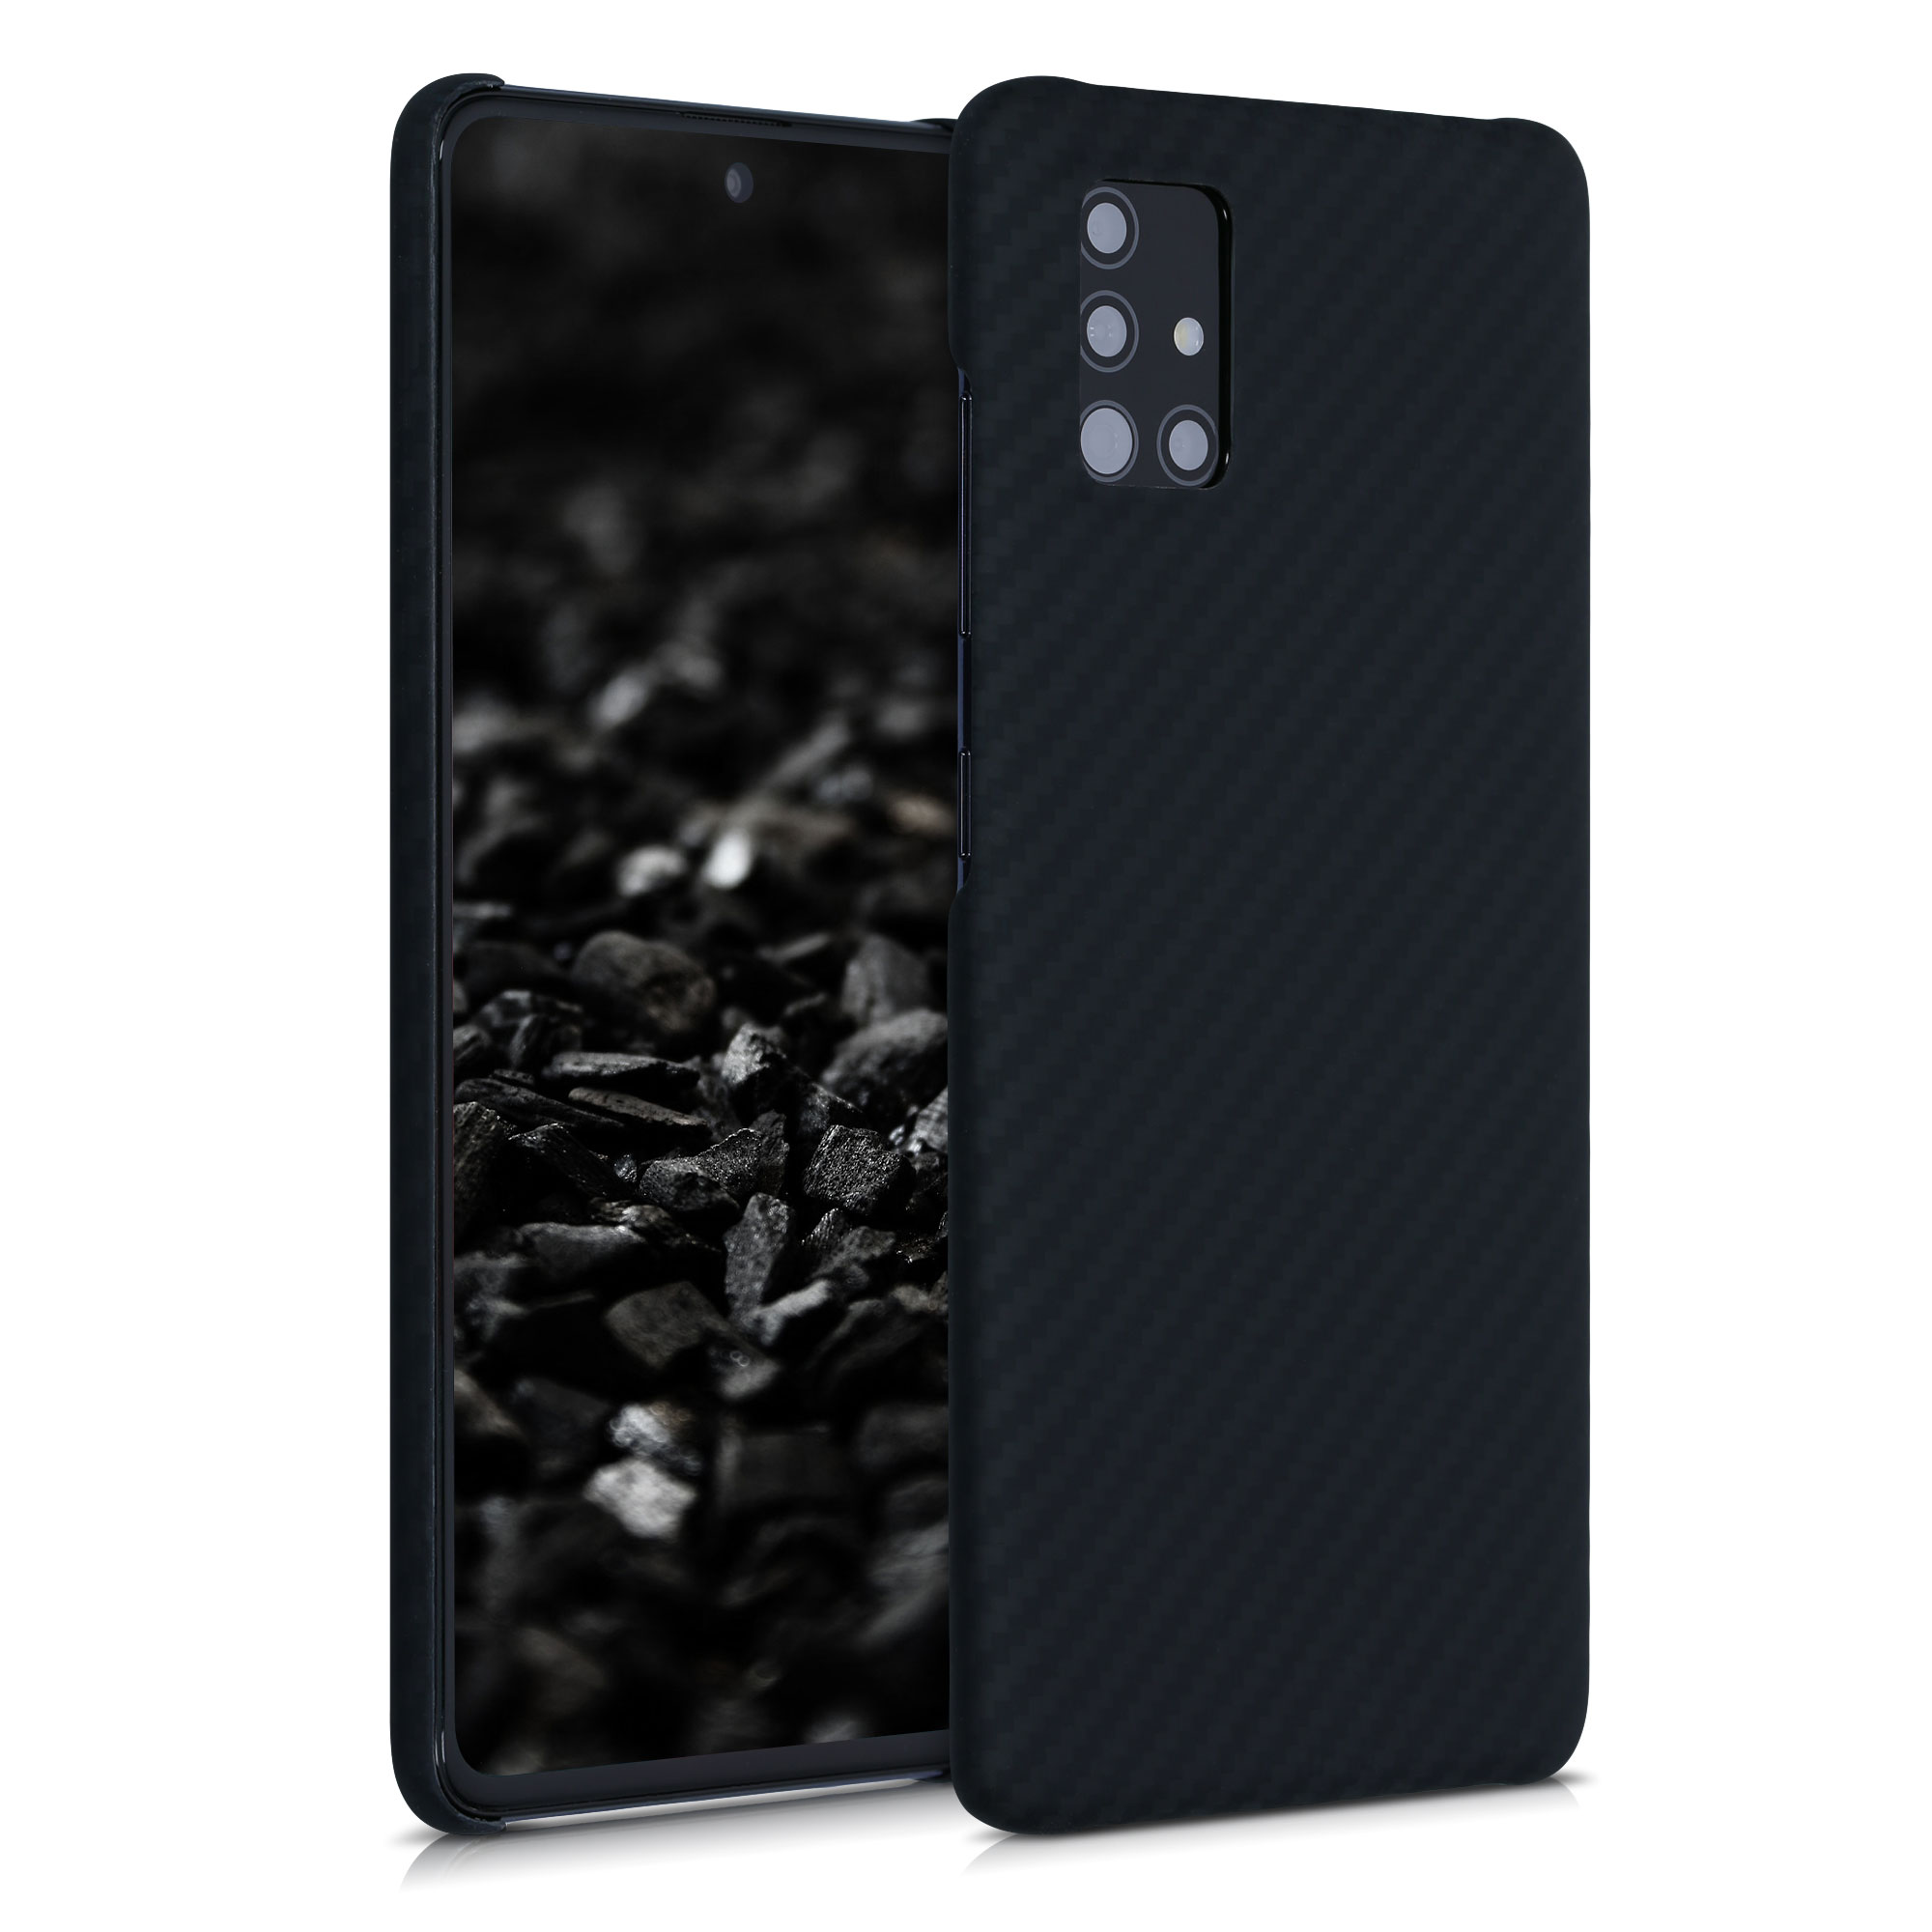 Aramidpouzdro pro Samsung A51 - černé matné